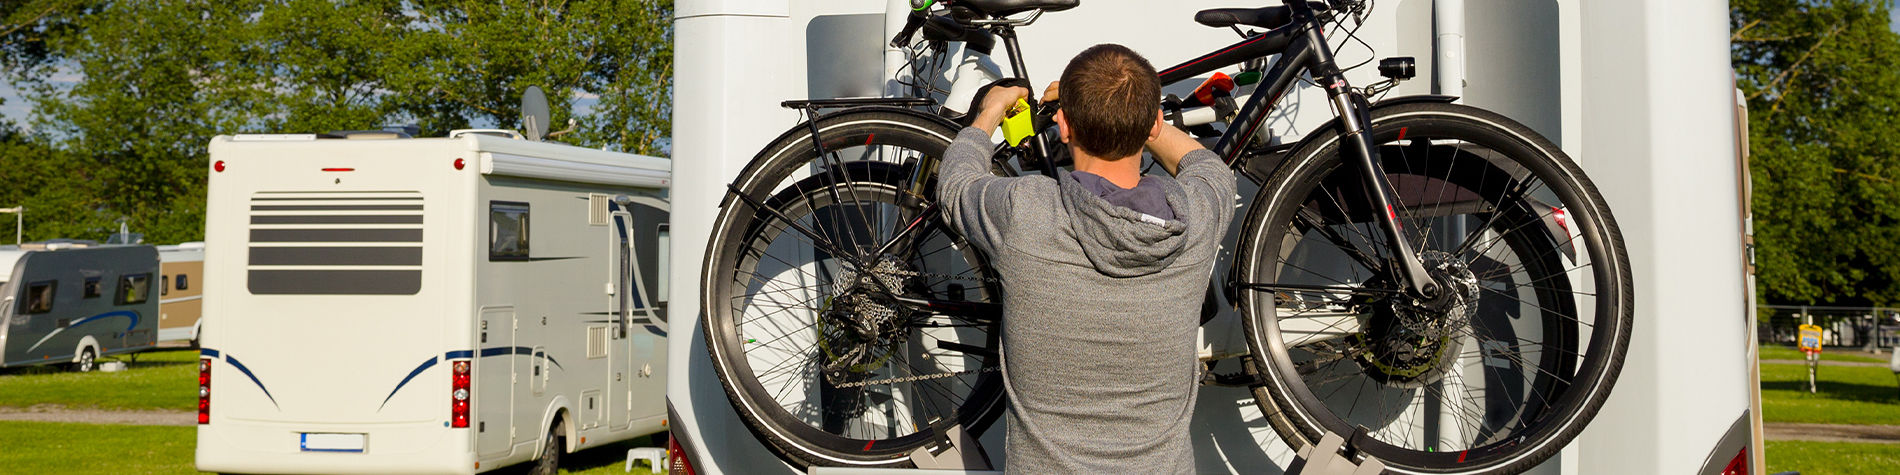 Un porte-vélo pour la soute – Autocaravane